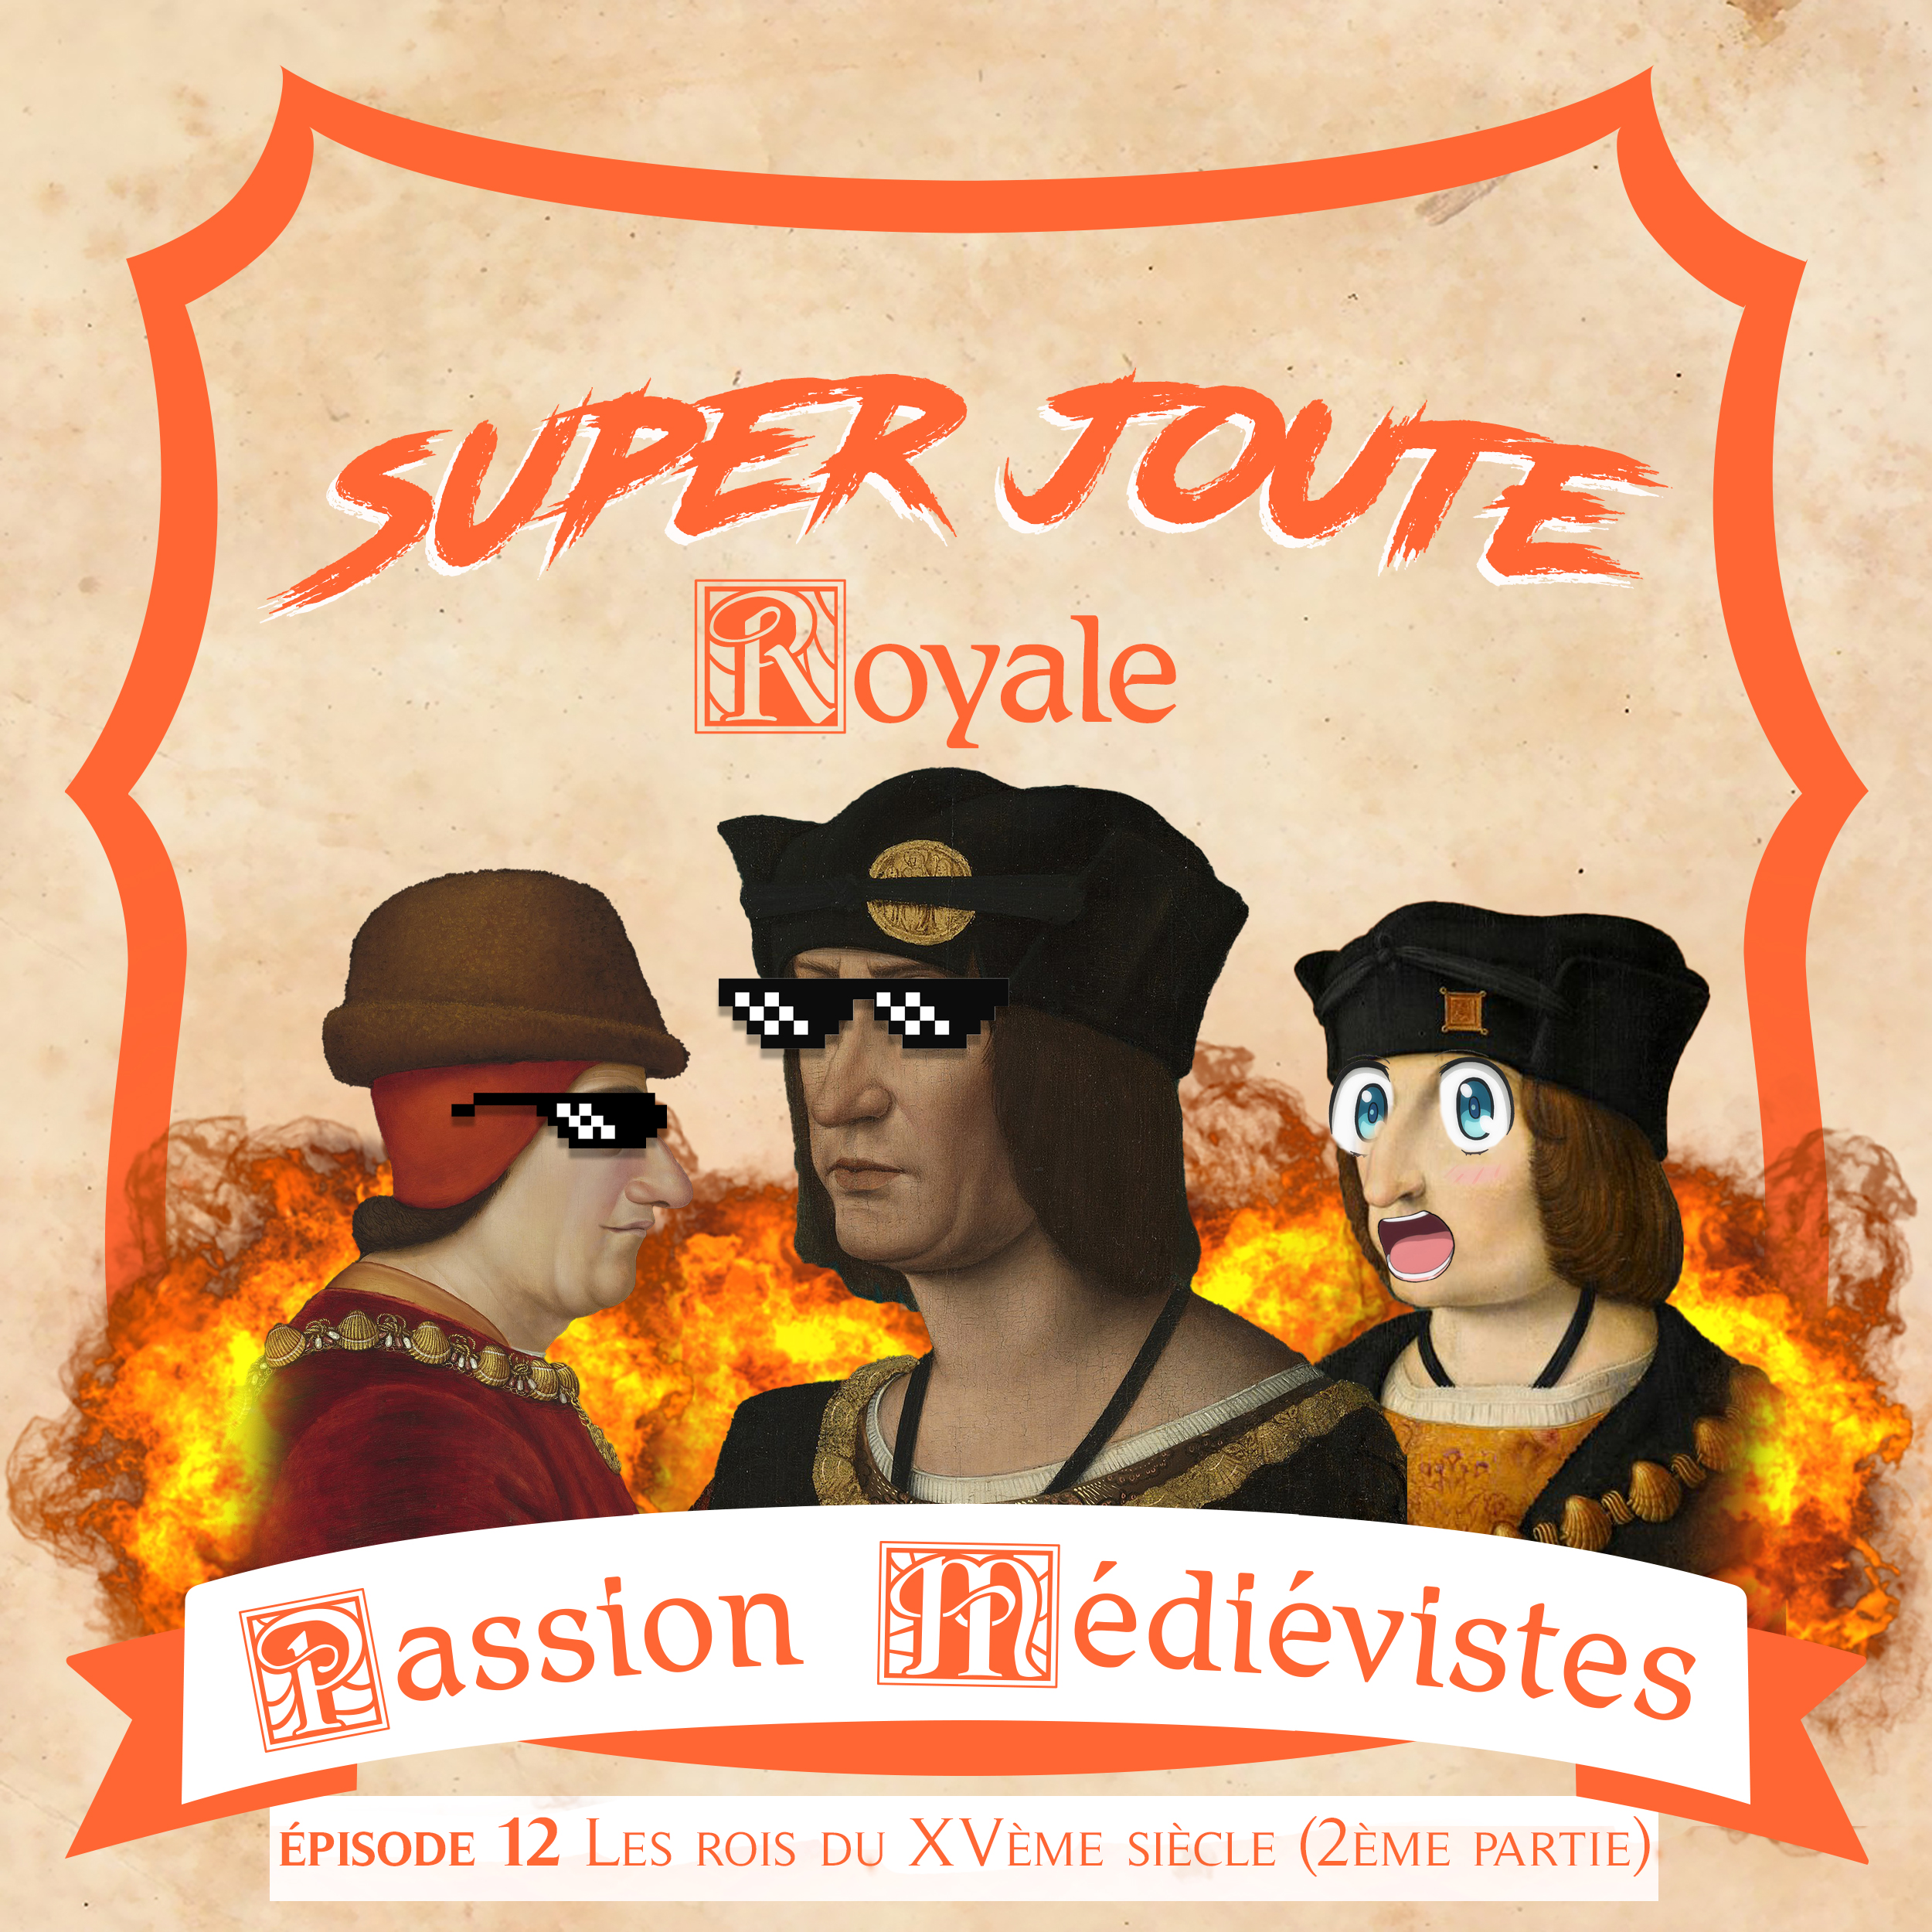 Visuel de Super Joute Royale par Winston / Baptiste Mossiere